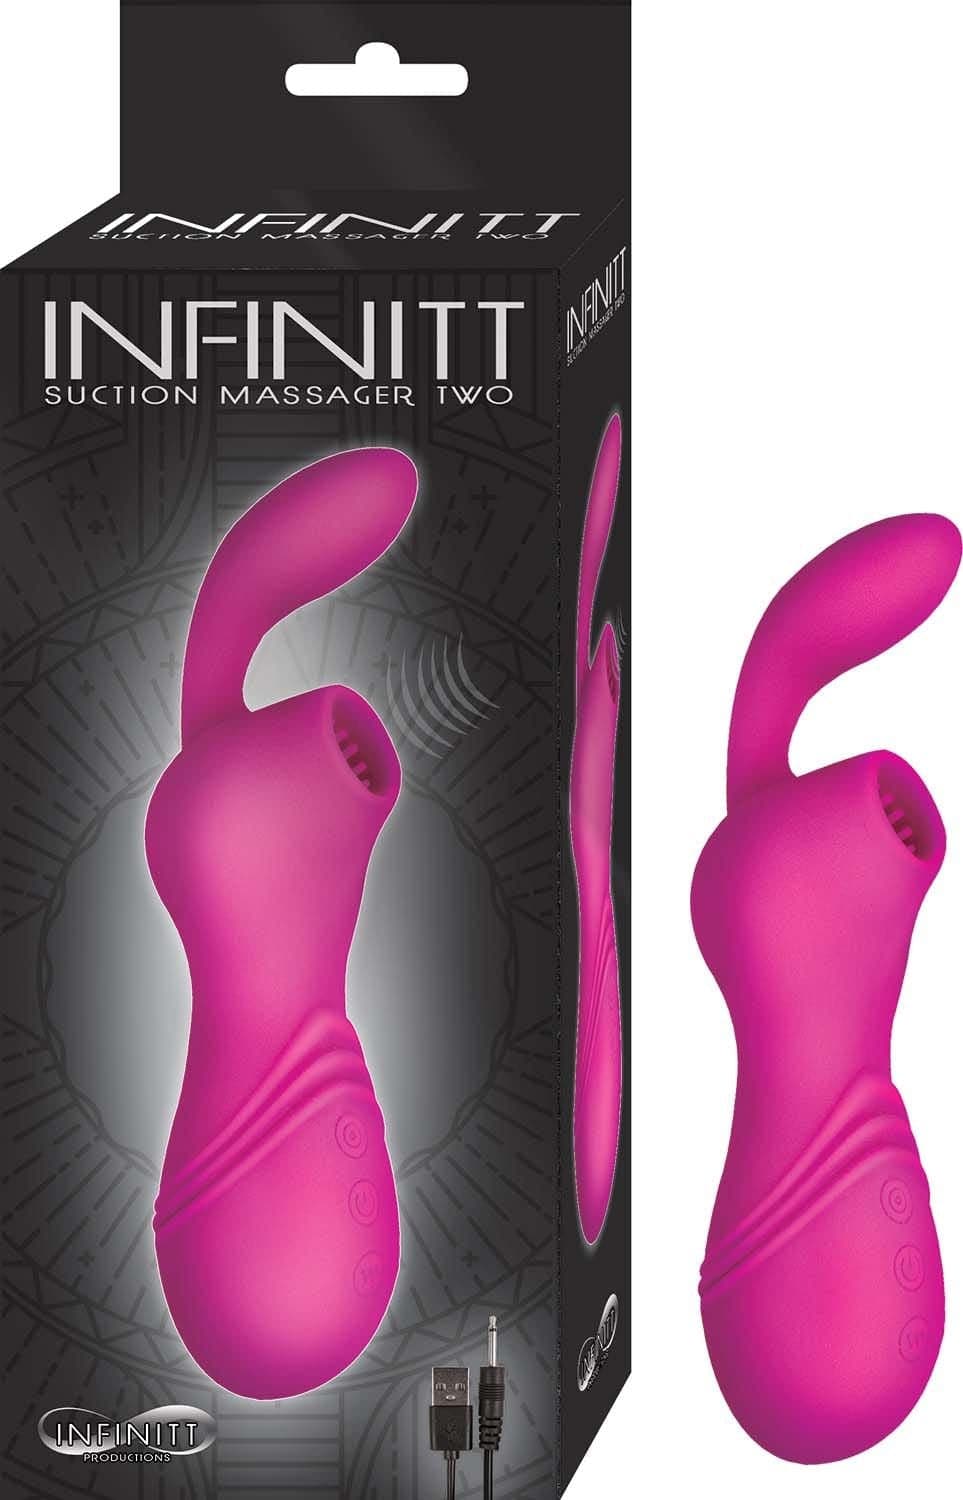 infinitt suction massager two pink